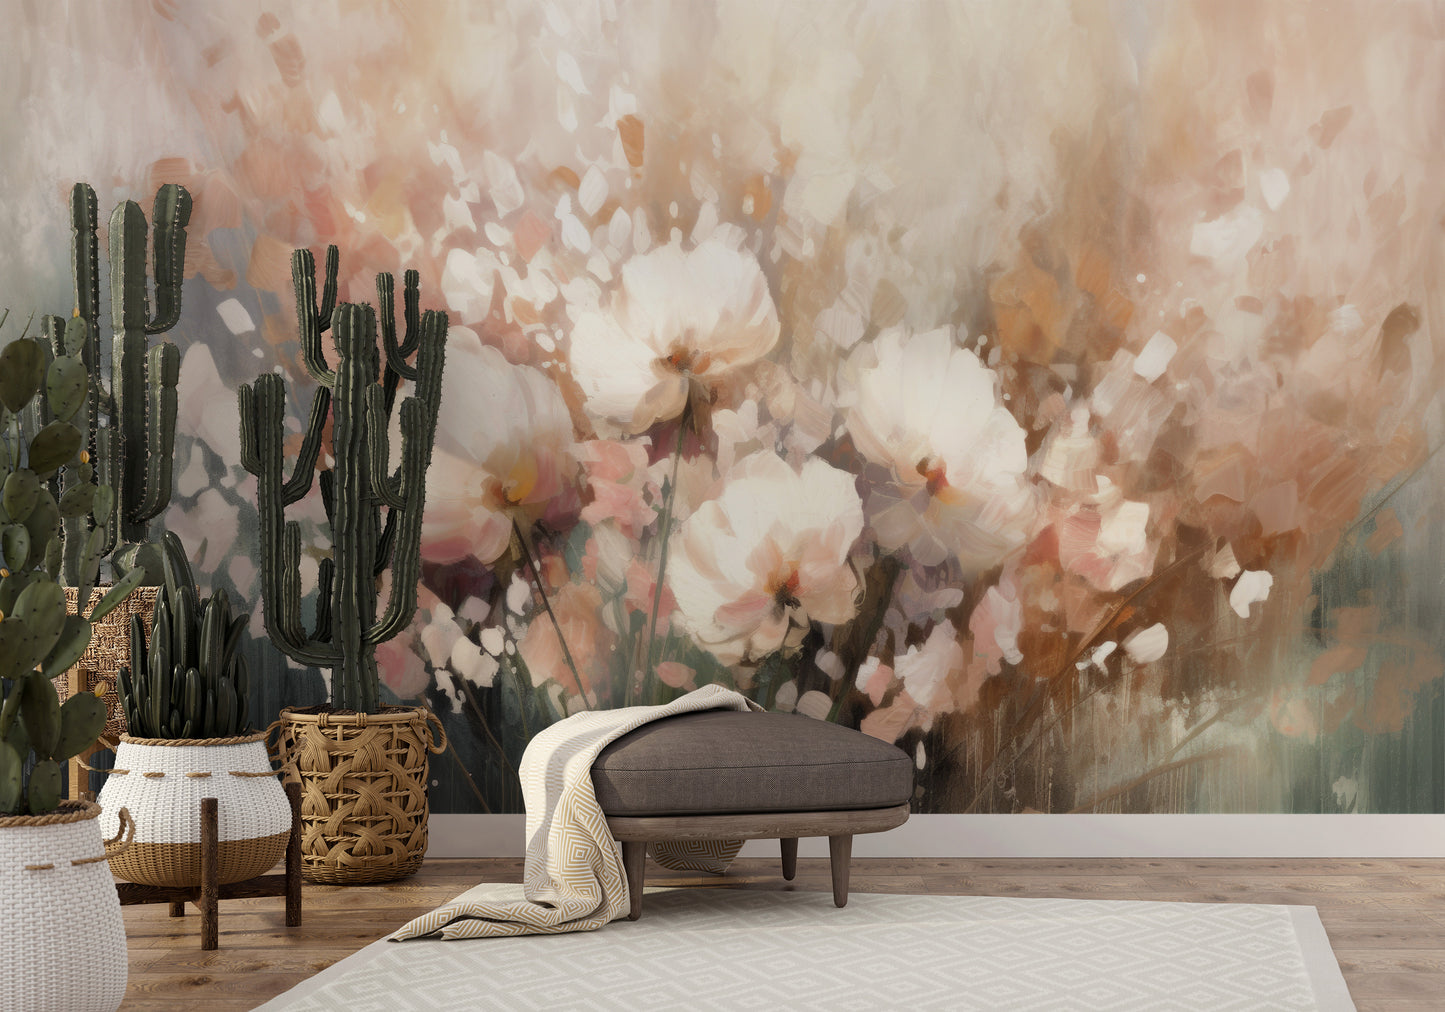 Wzór fototapety artystycznej o nazwie Misty Blossom Drift pokazanej w aranżacji wnętrza.